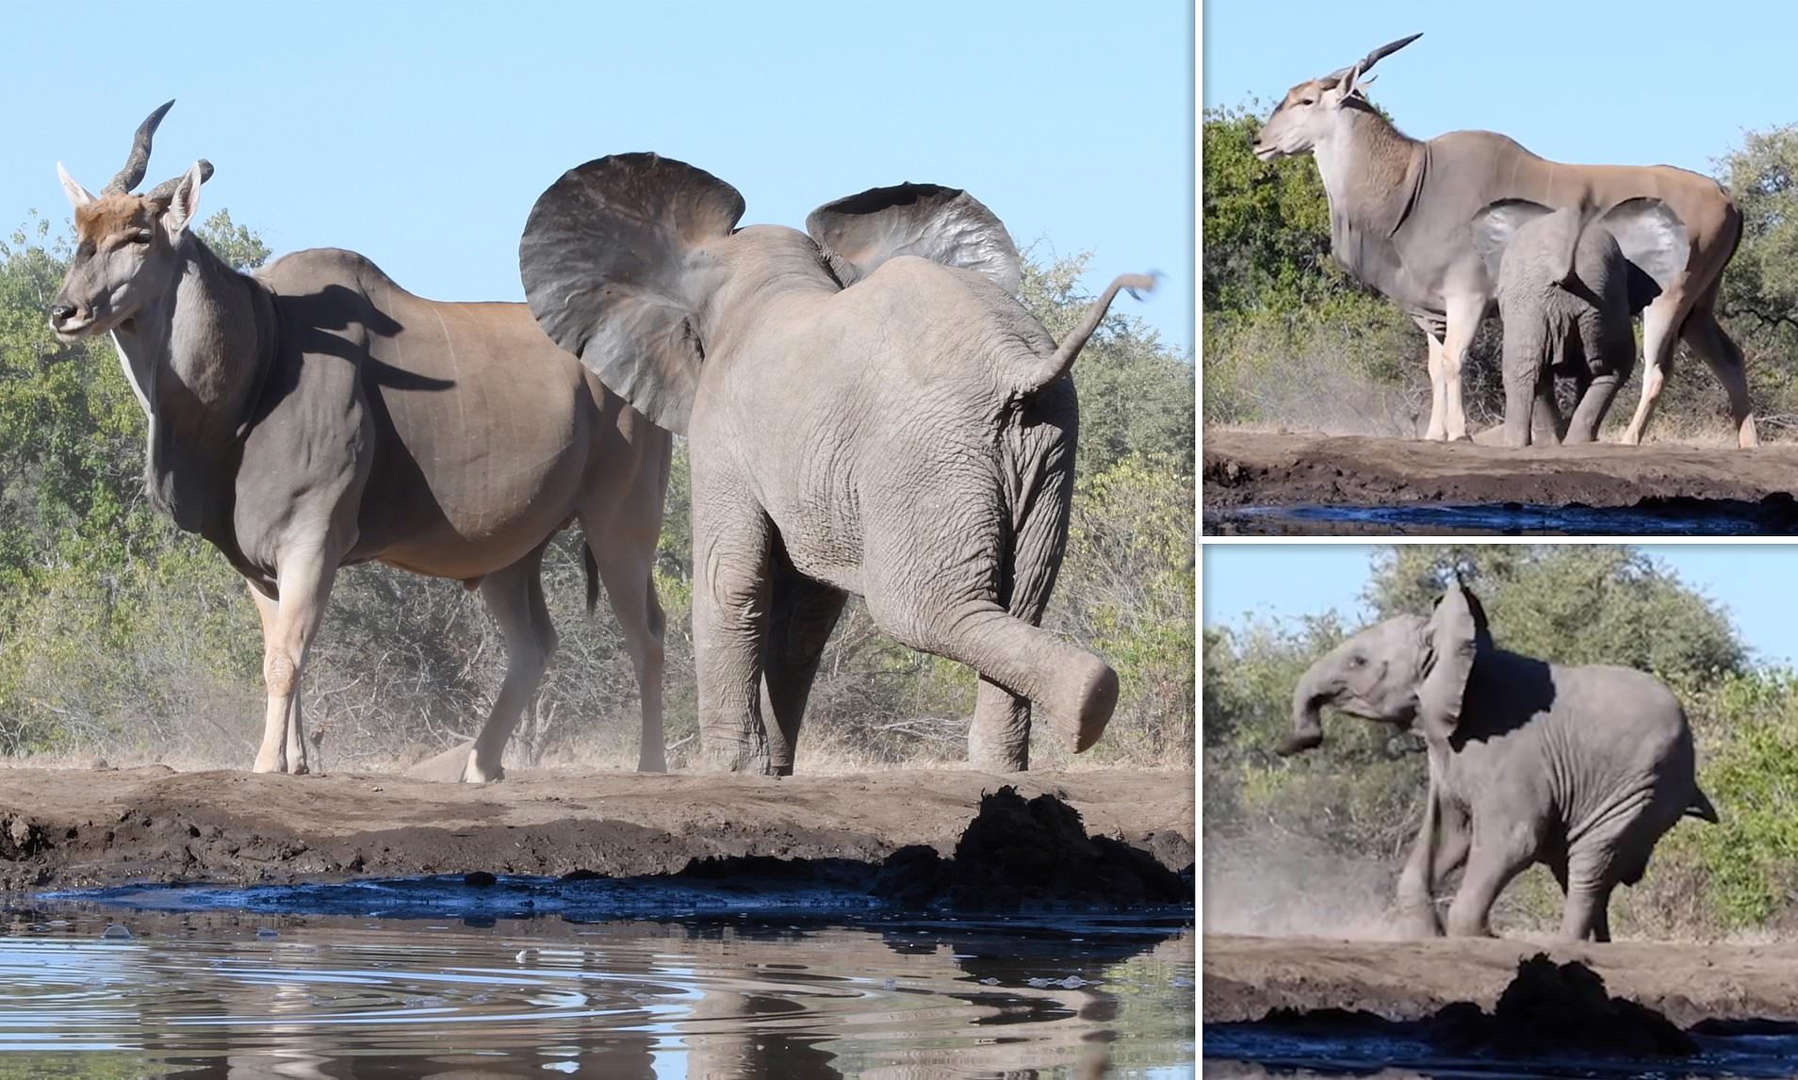 博茨瓦纳的马沙图野生动物保护区2只小象为霸占水坑想吓跑伊兰羚羊